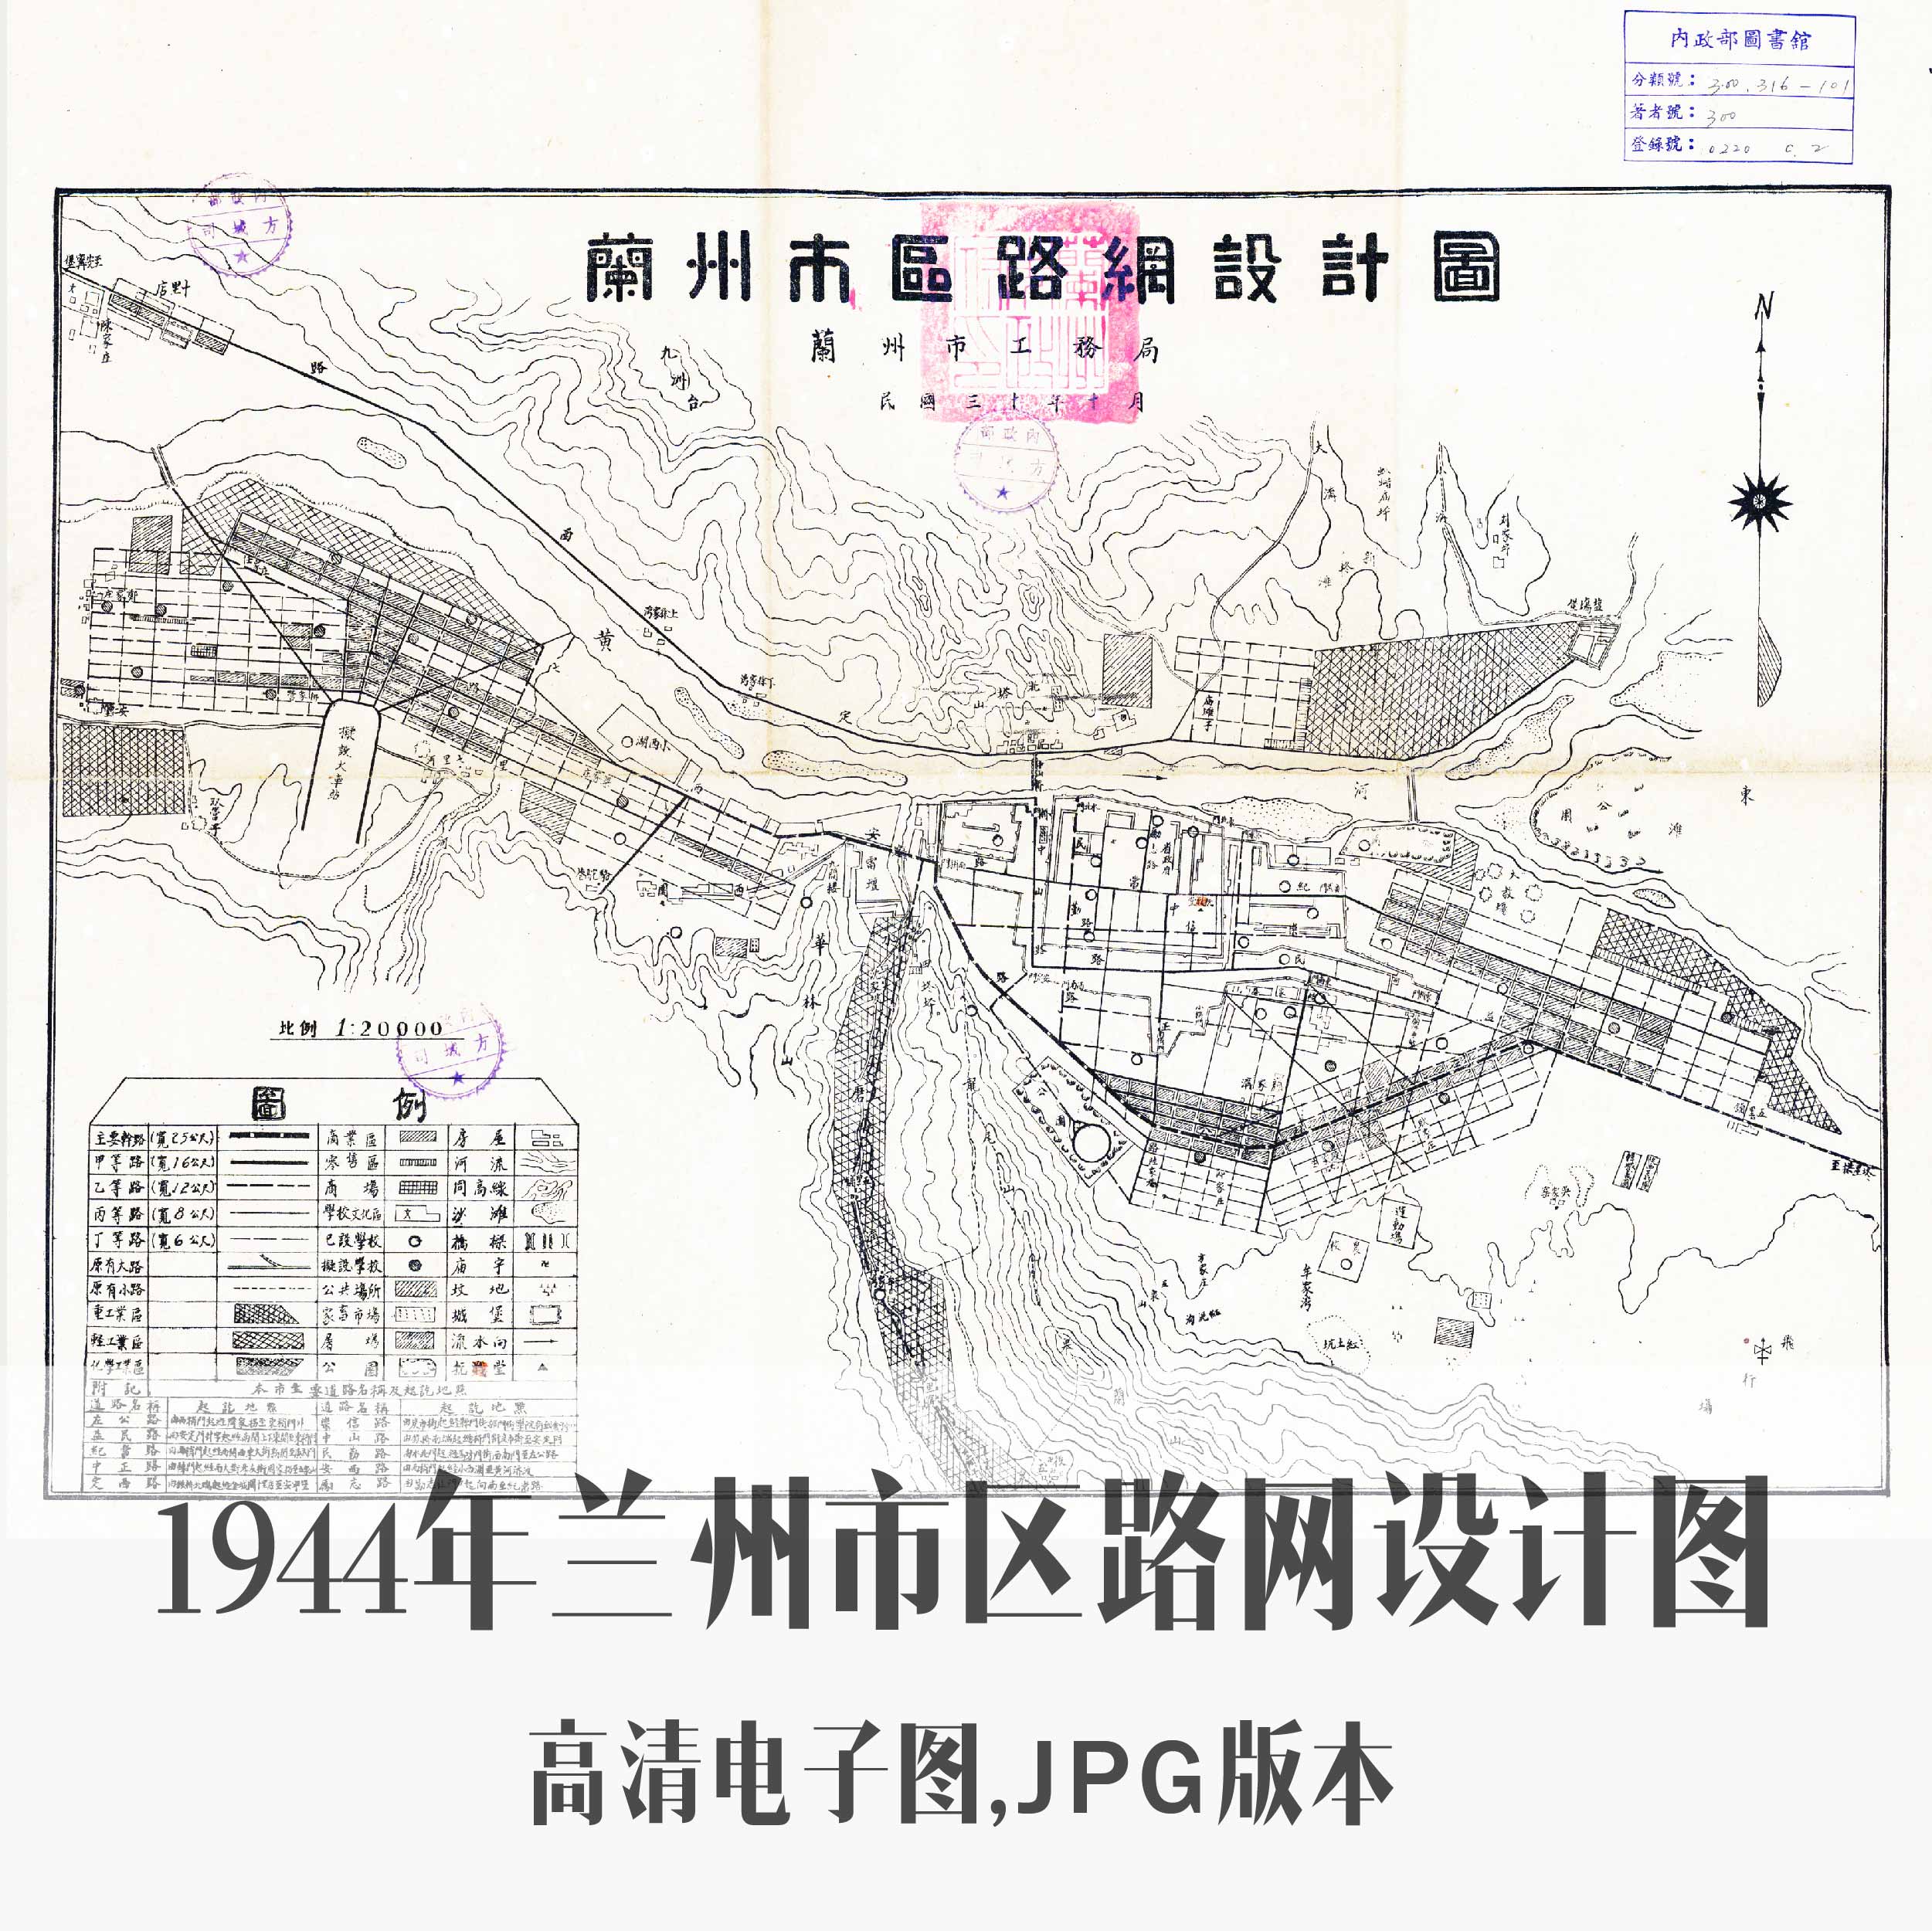 1944年兰州市区路网设计图民国甘肃电子老地图历史地理资料素材